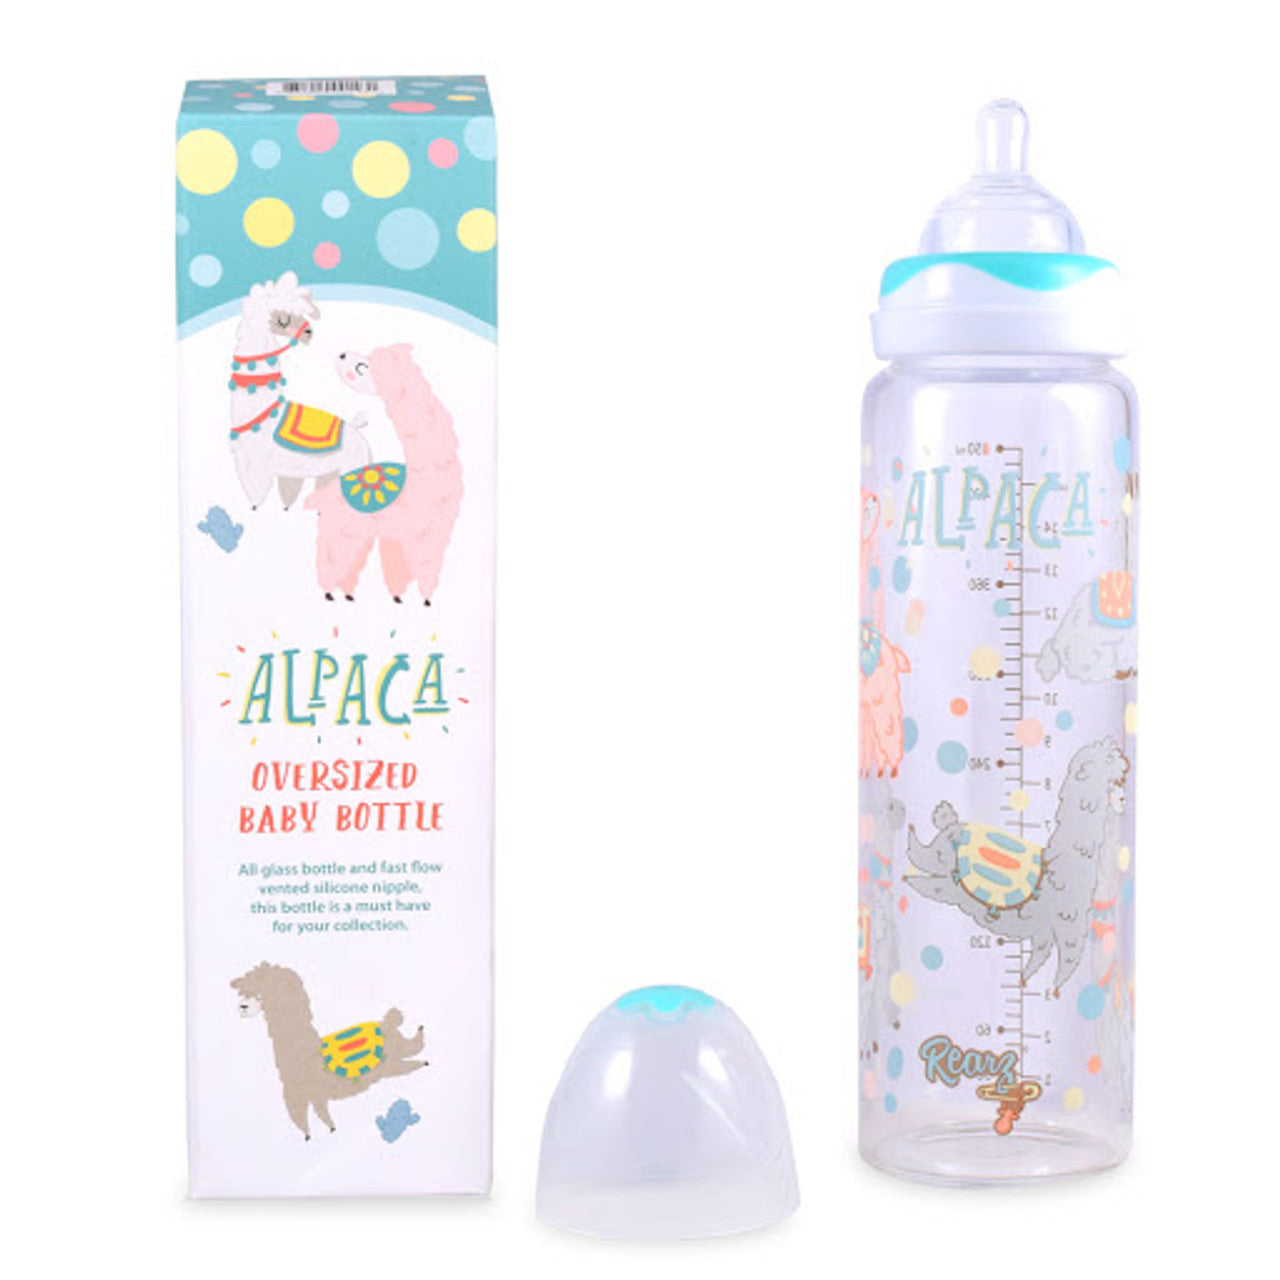 Rearz - Adult Baby Bottle - Alpaca